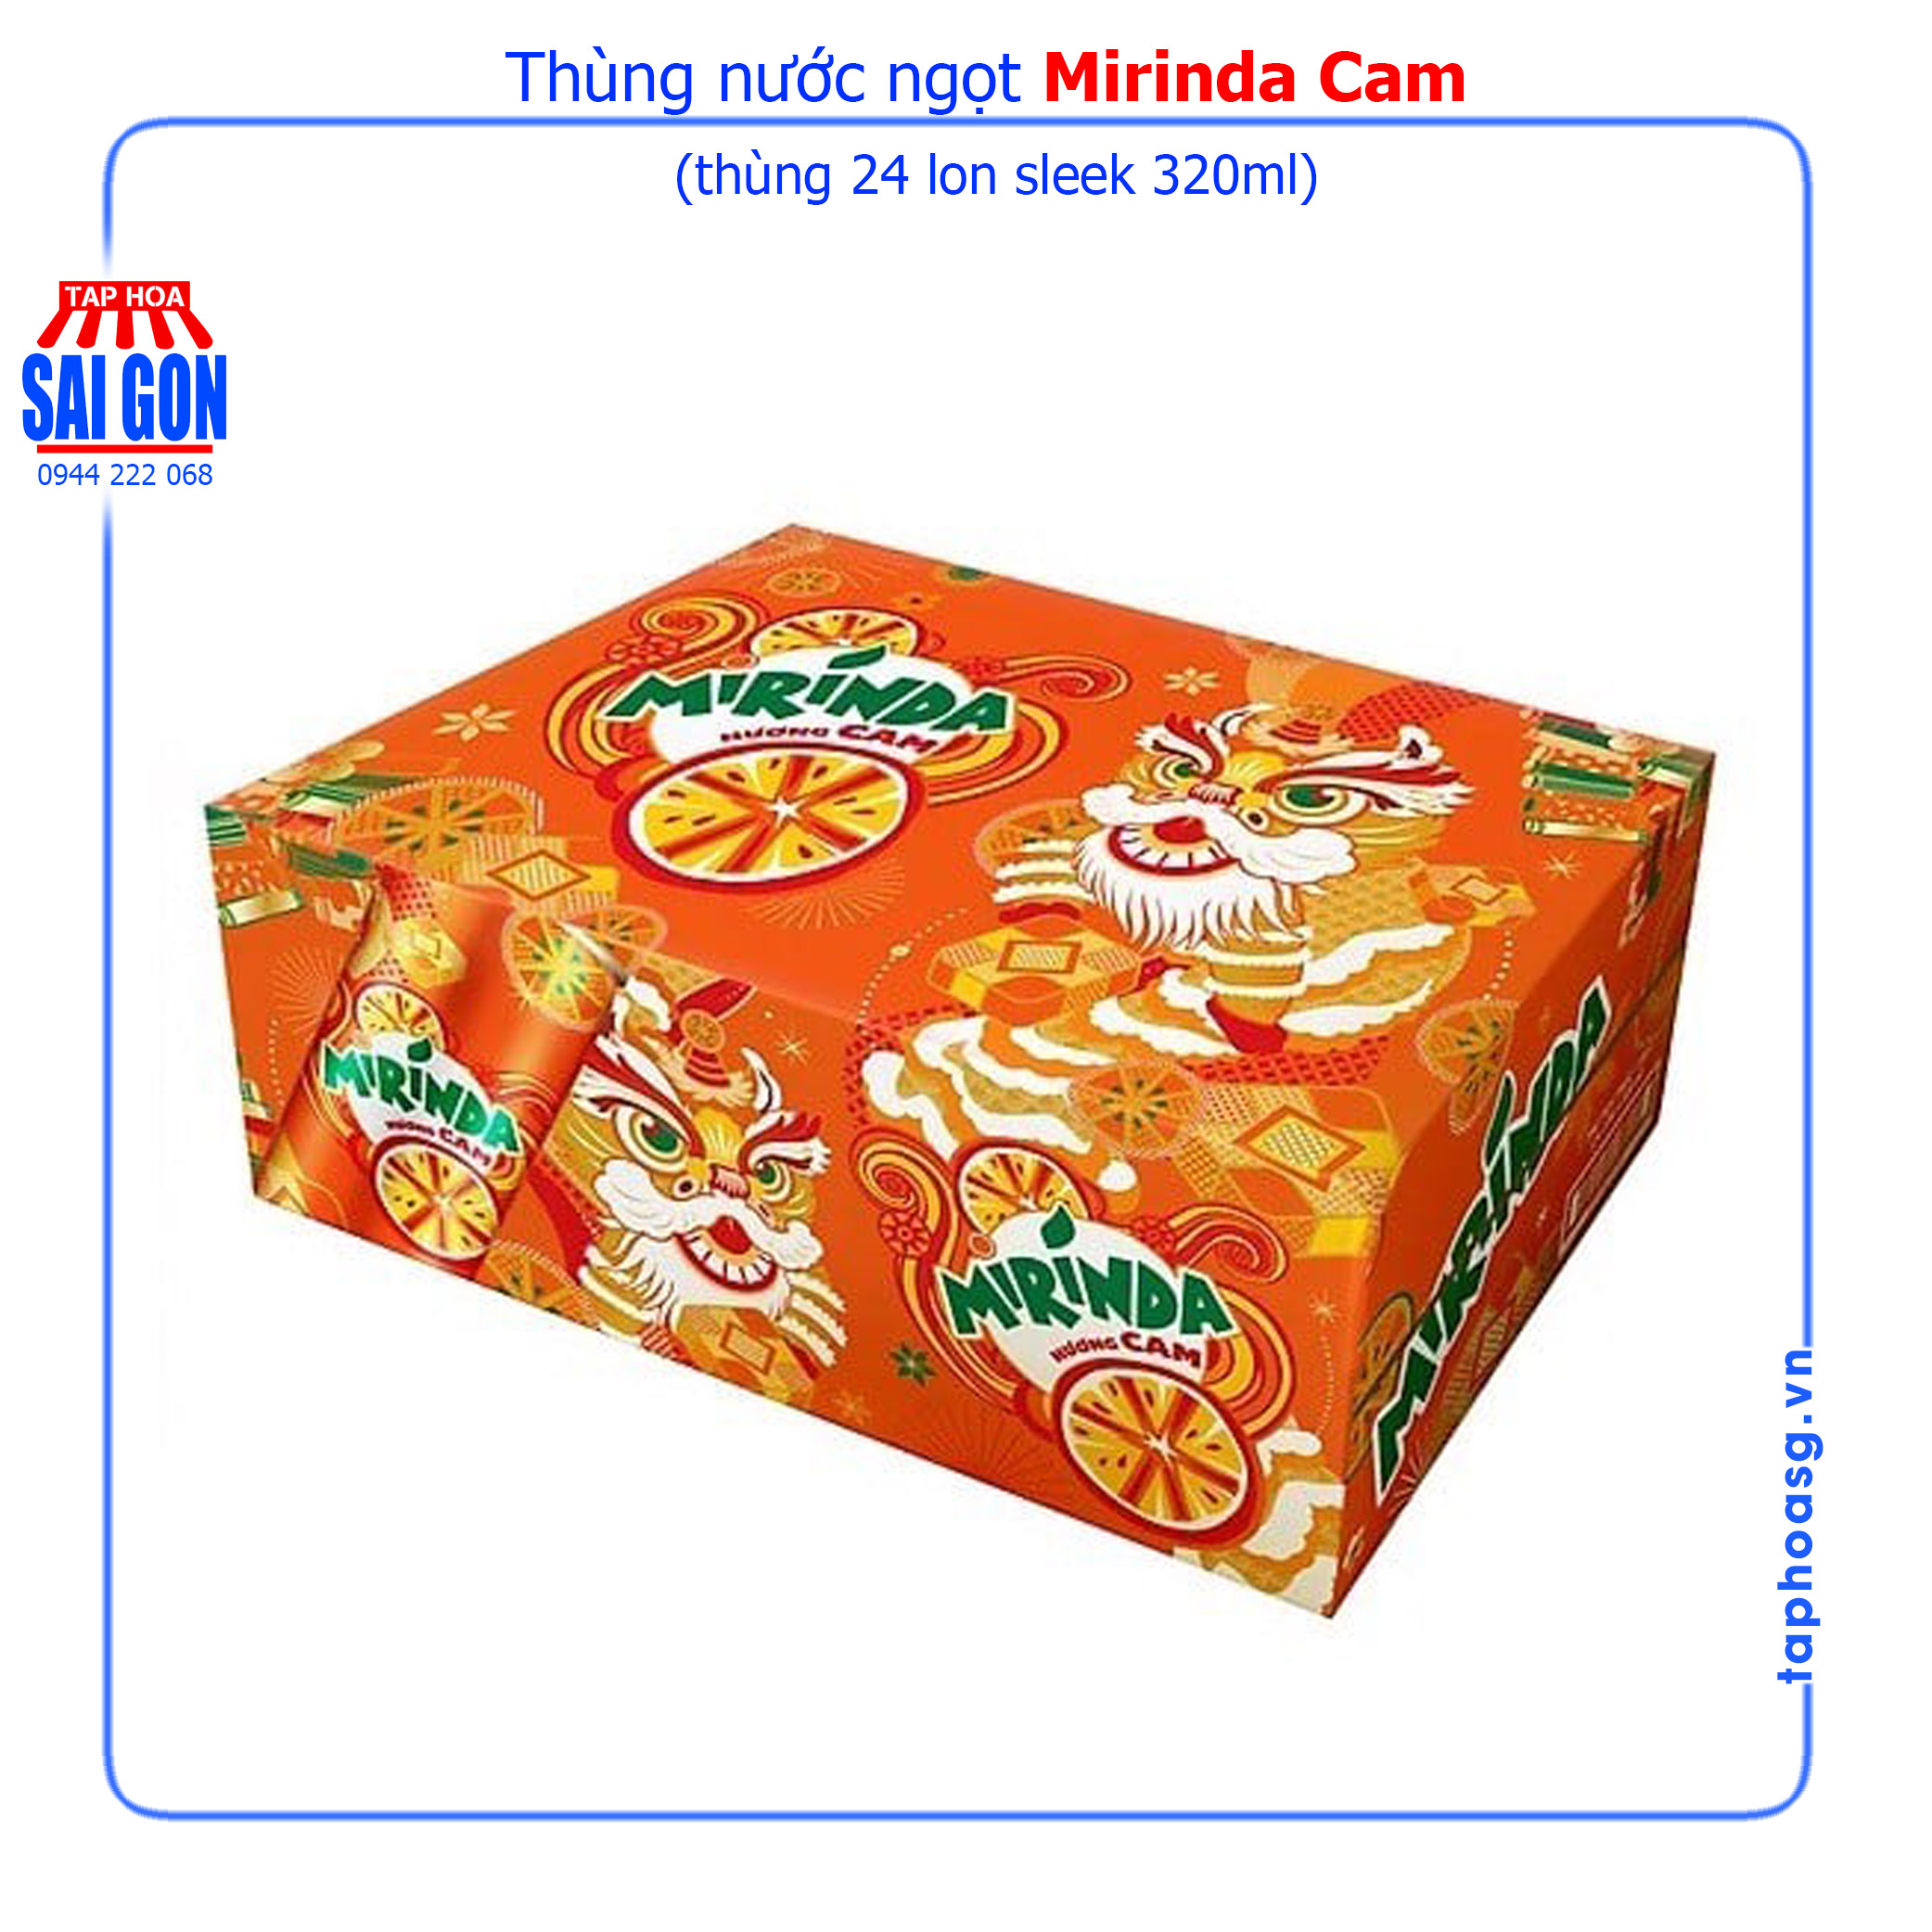 Thùng Mirinda Cam 24 lon sleek 320ml ngọt ngào từ tinh chất cam mang lại